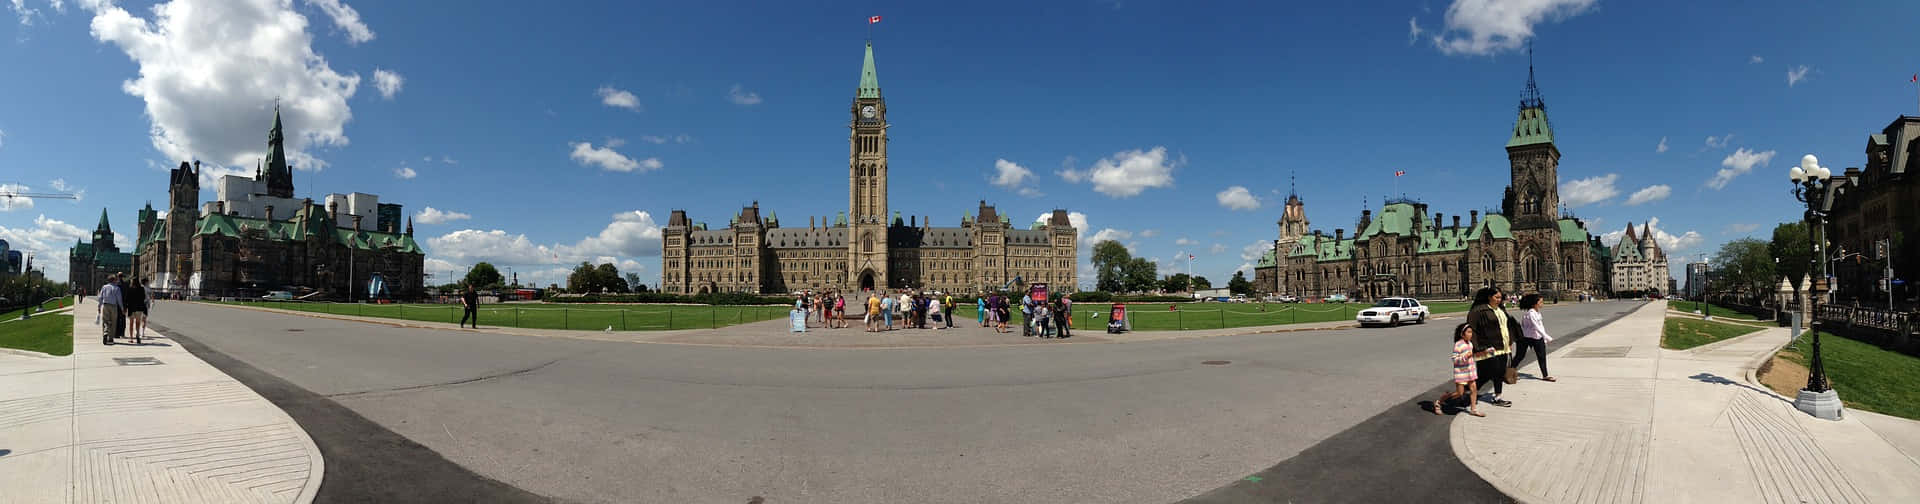 Imagenpanorámica Del Parlamento En Canadá